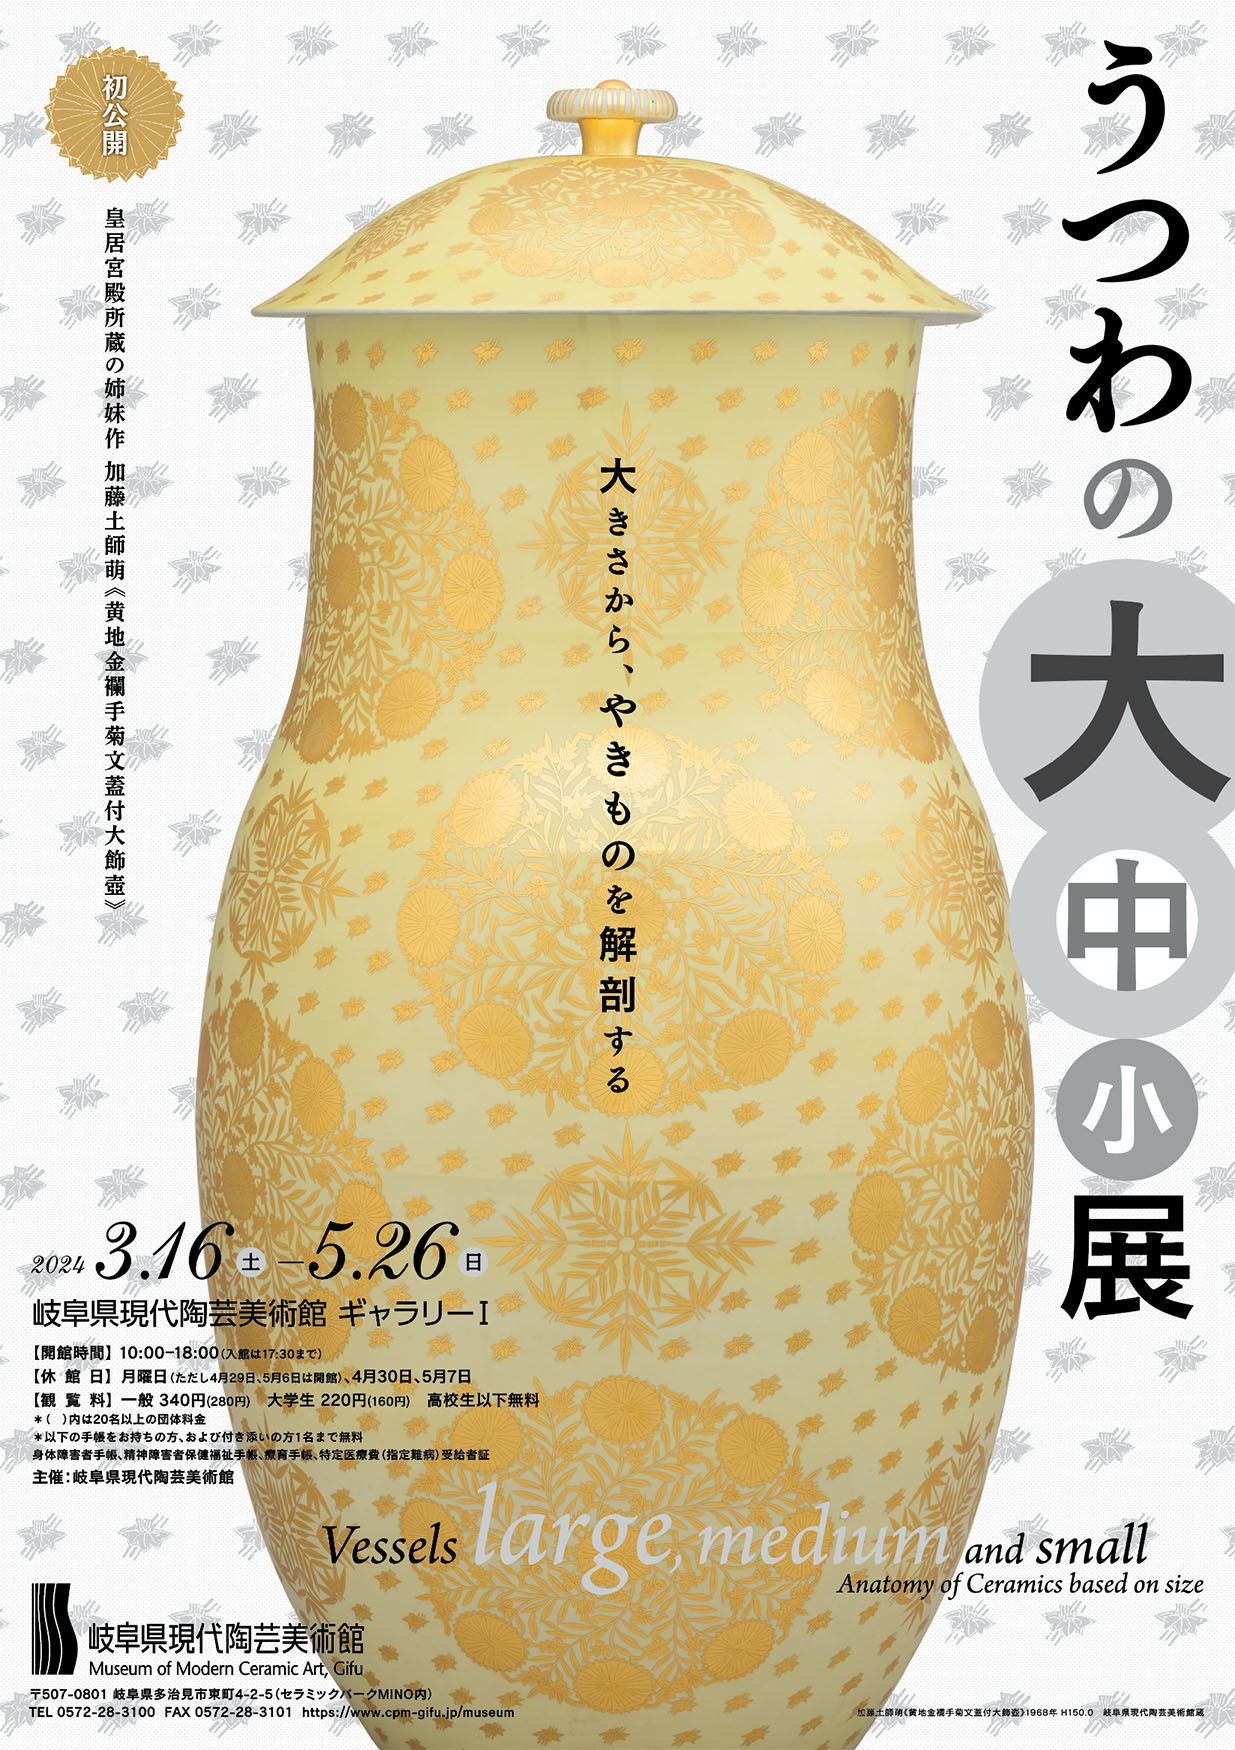 岐阜県現代陶芸美術館「うつわの大中小展」